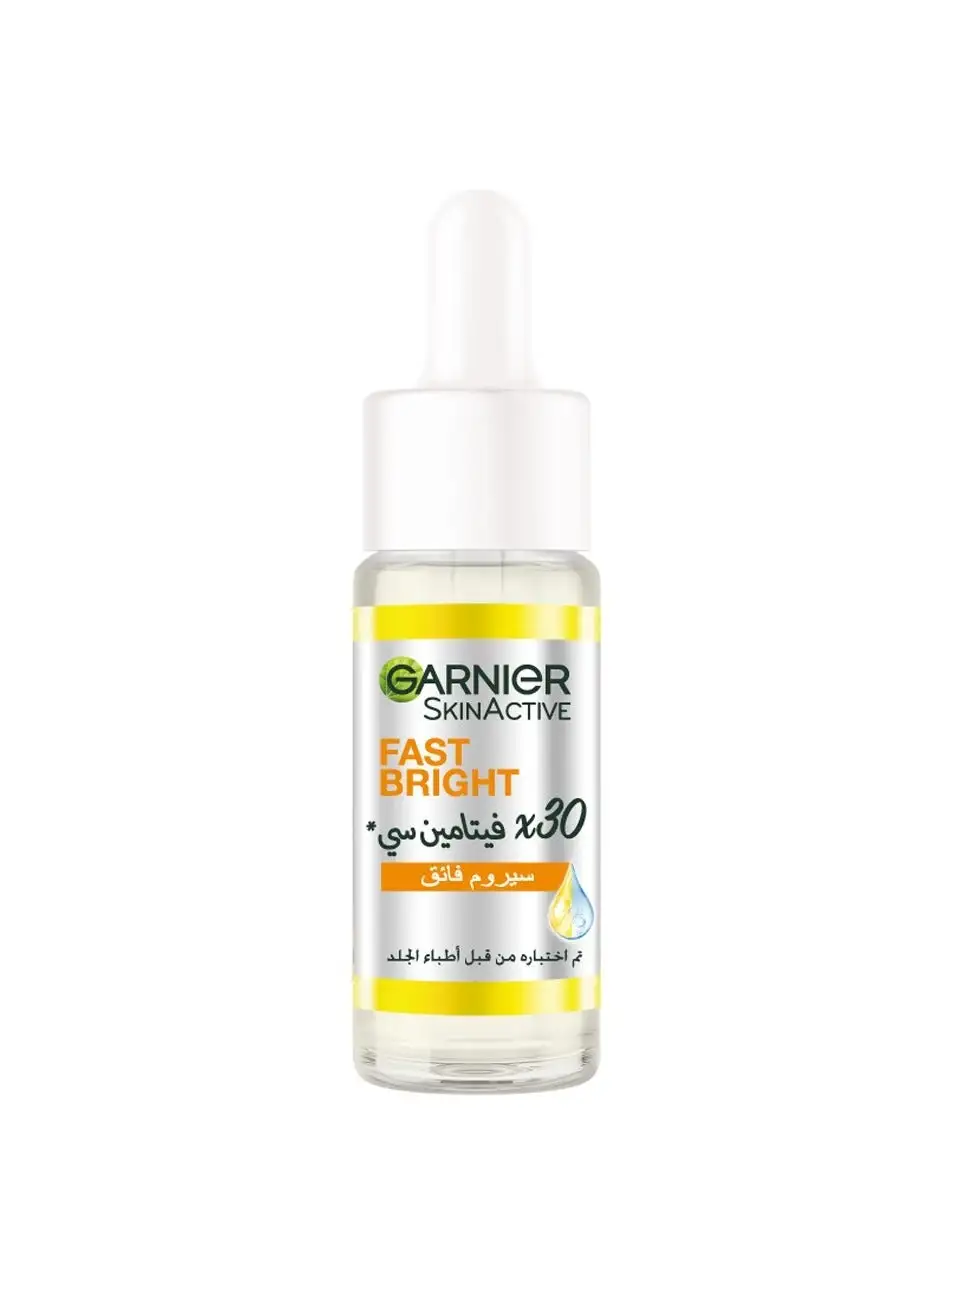 Garnier Skin Active Fast Bright 30x Vitamin C Booster Serum 15 ml